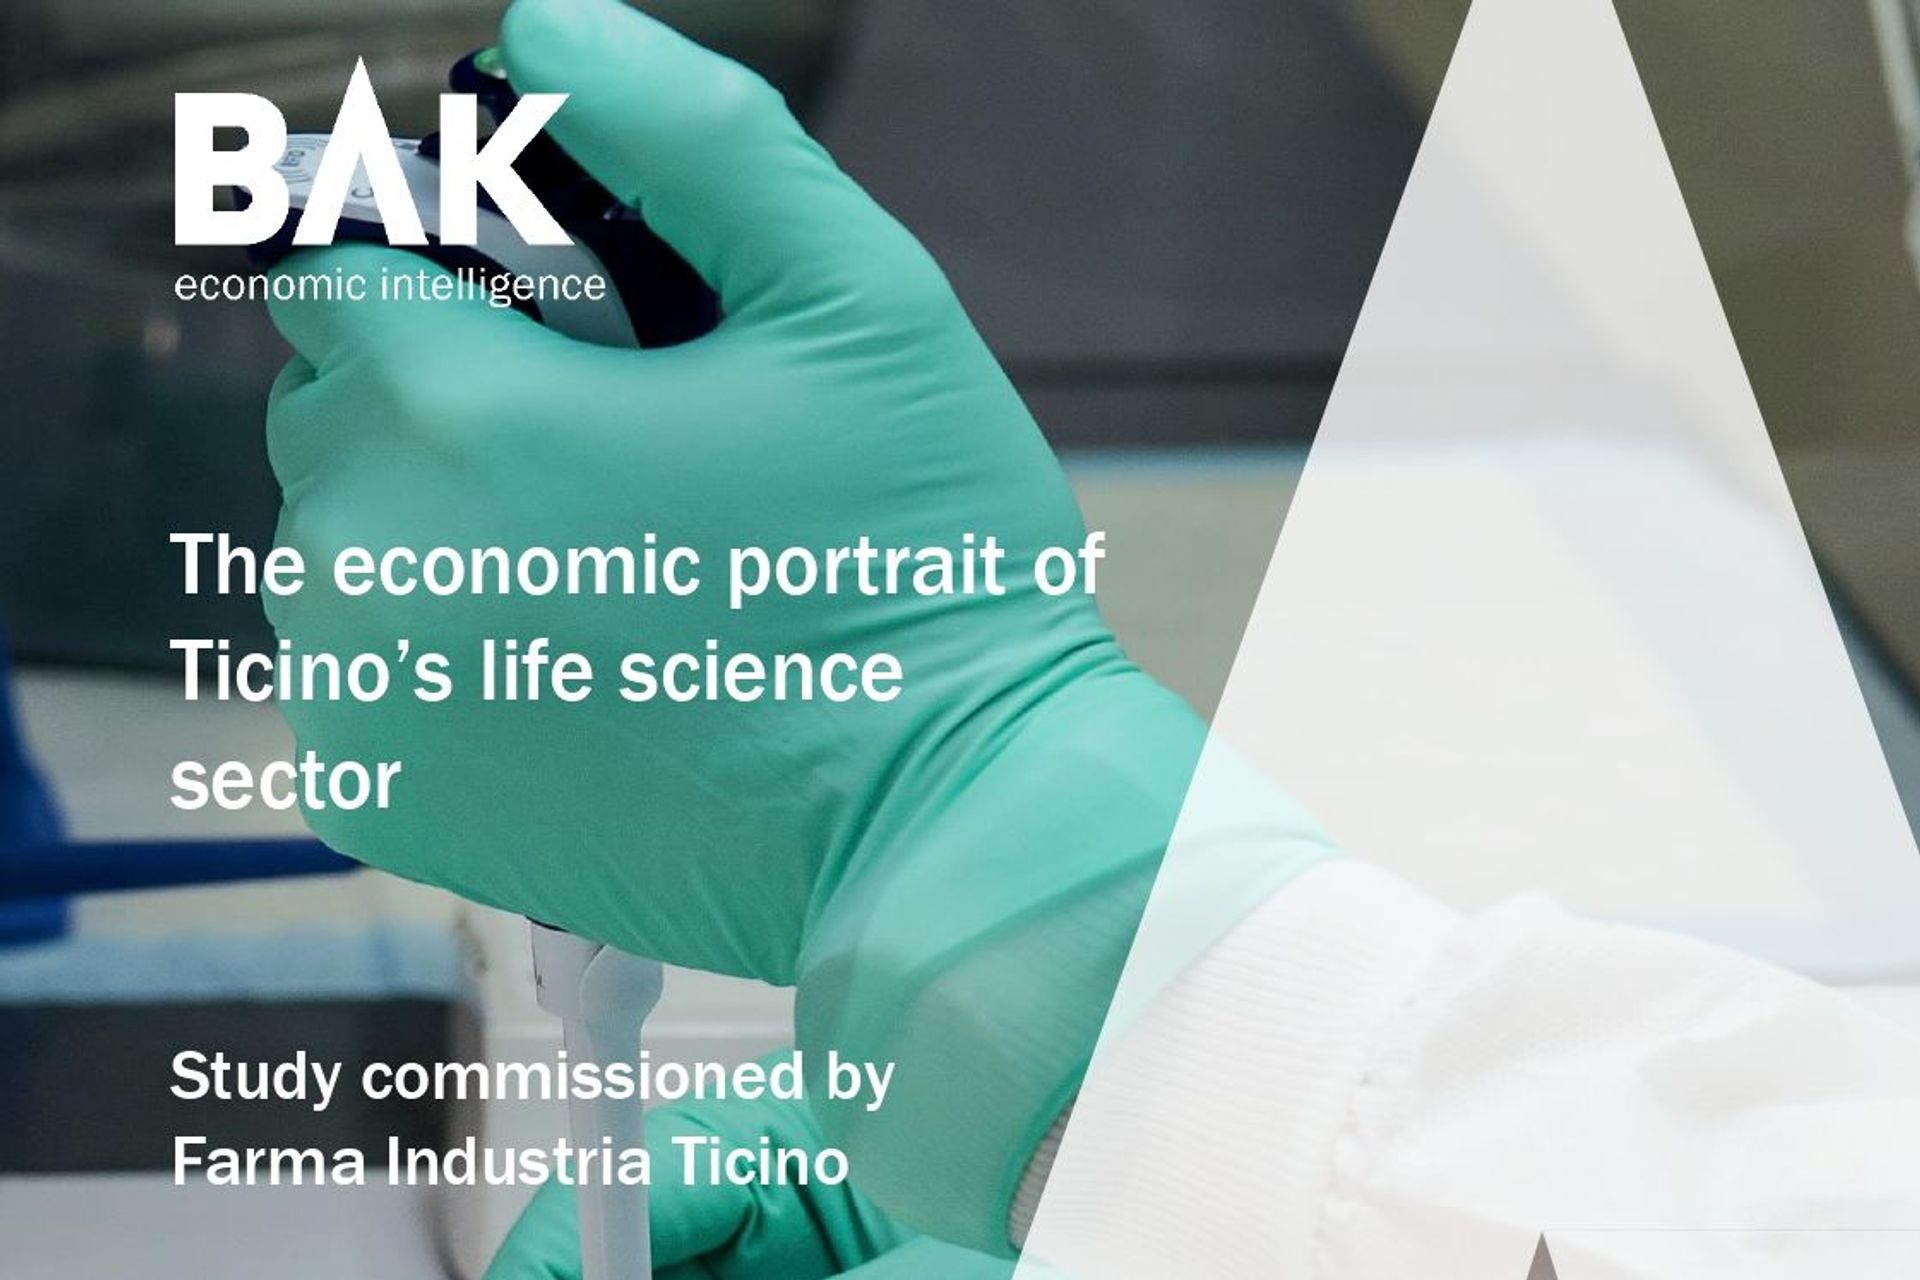 La copertina del rapporto “The economic portrait of Ticino’s life science sector” di BAK Economics